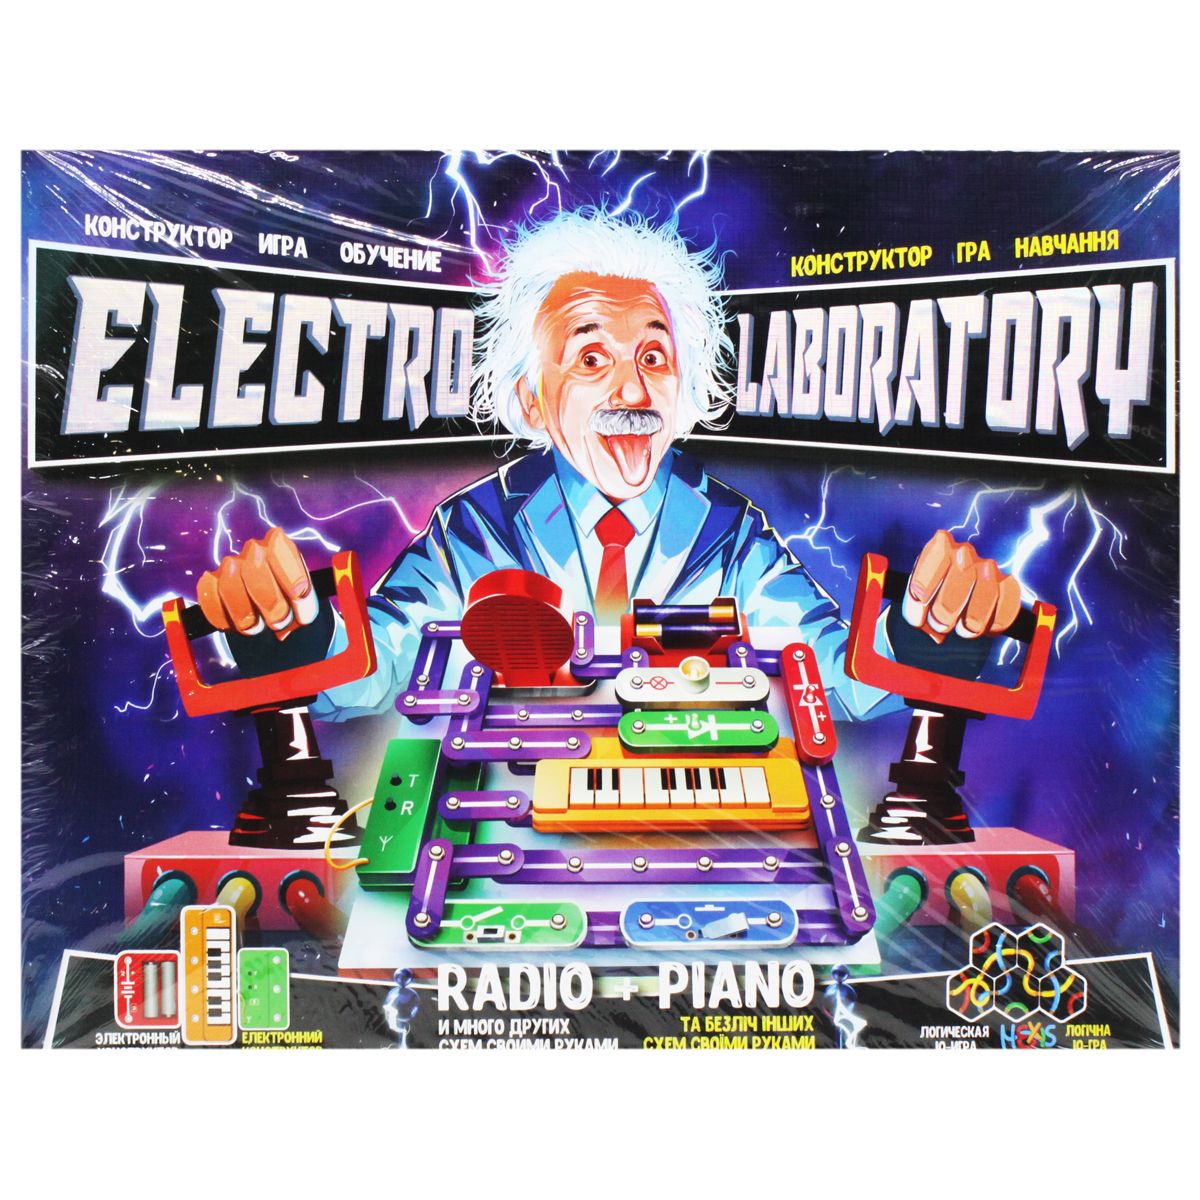 Електронний конструктор "Electro Laboratory.  Radio+Piano"